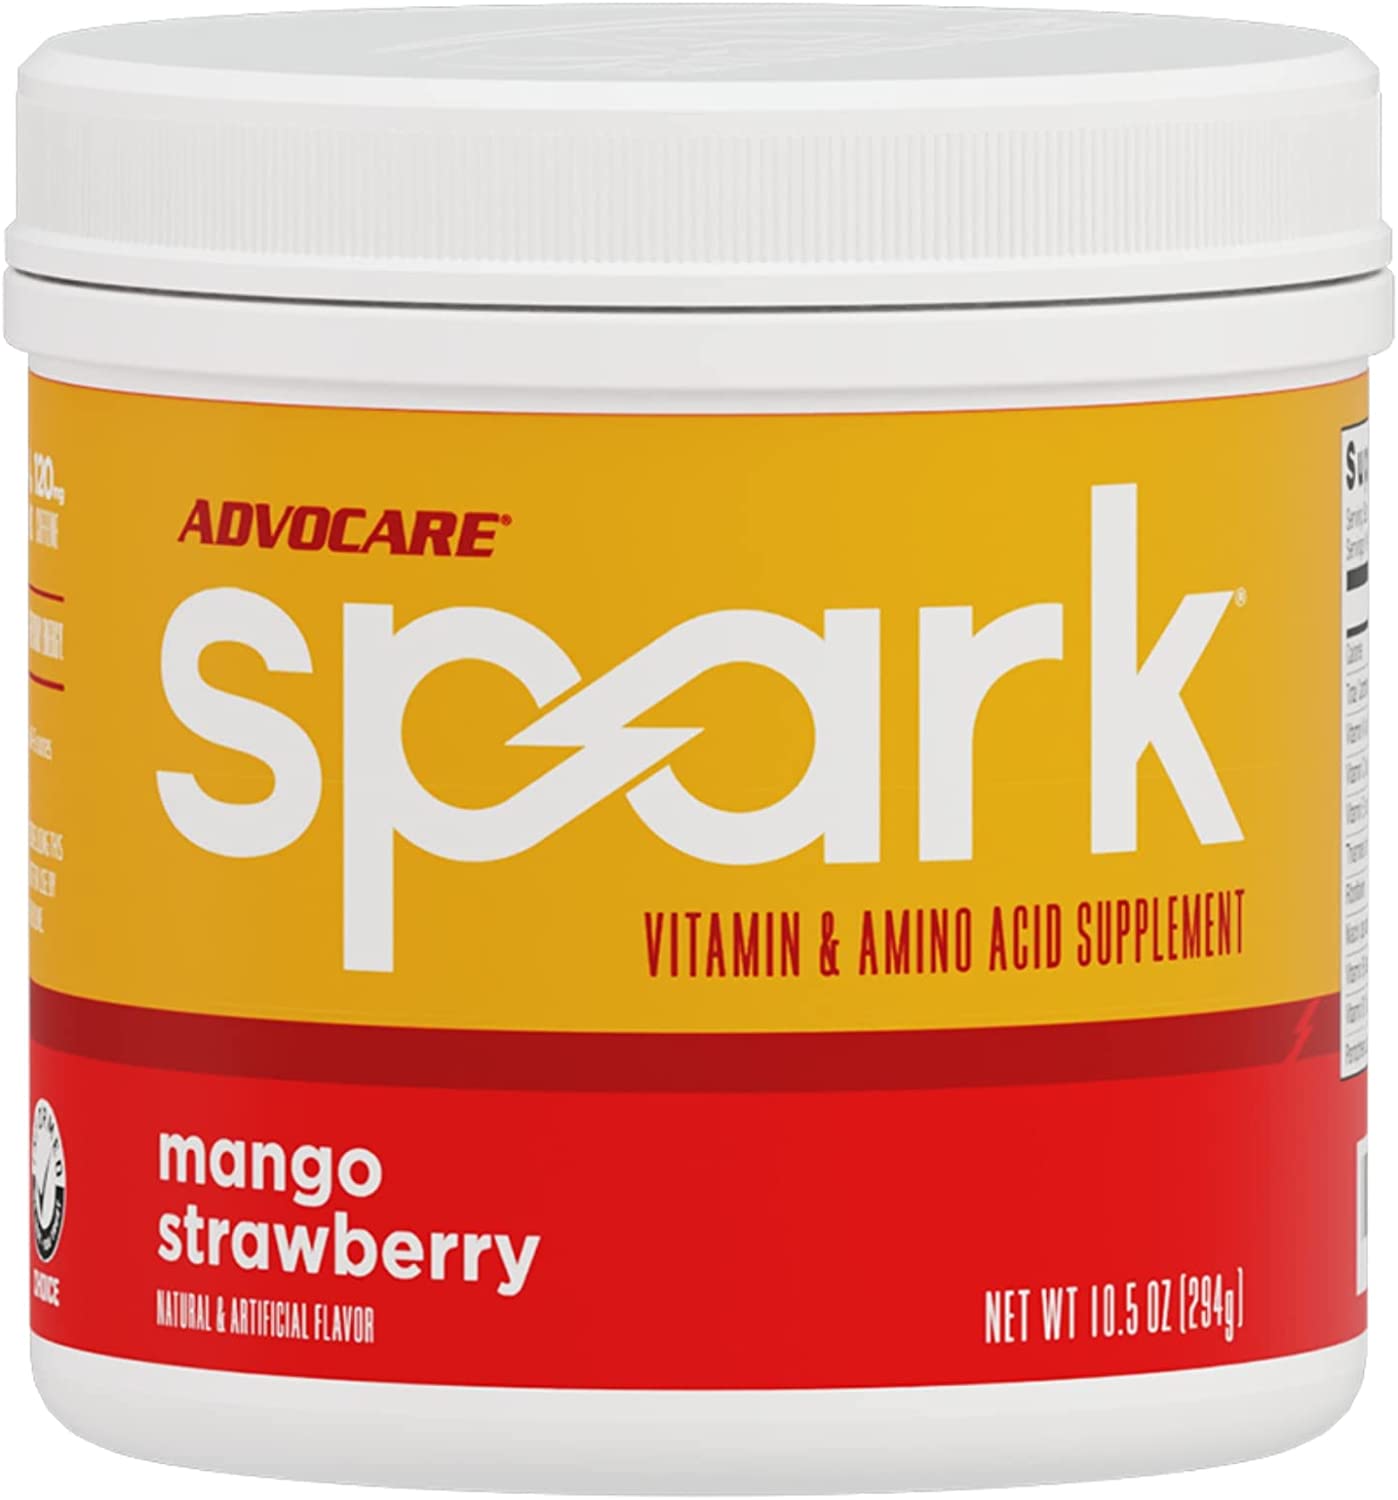  AdvoCare Spark Vitamin & Amino Acid Supplement - Focus